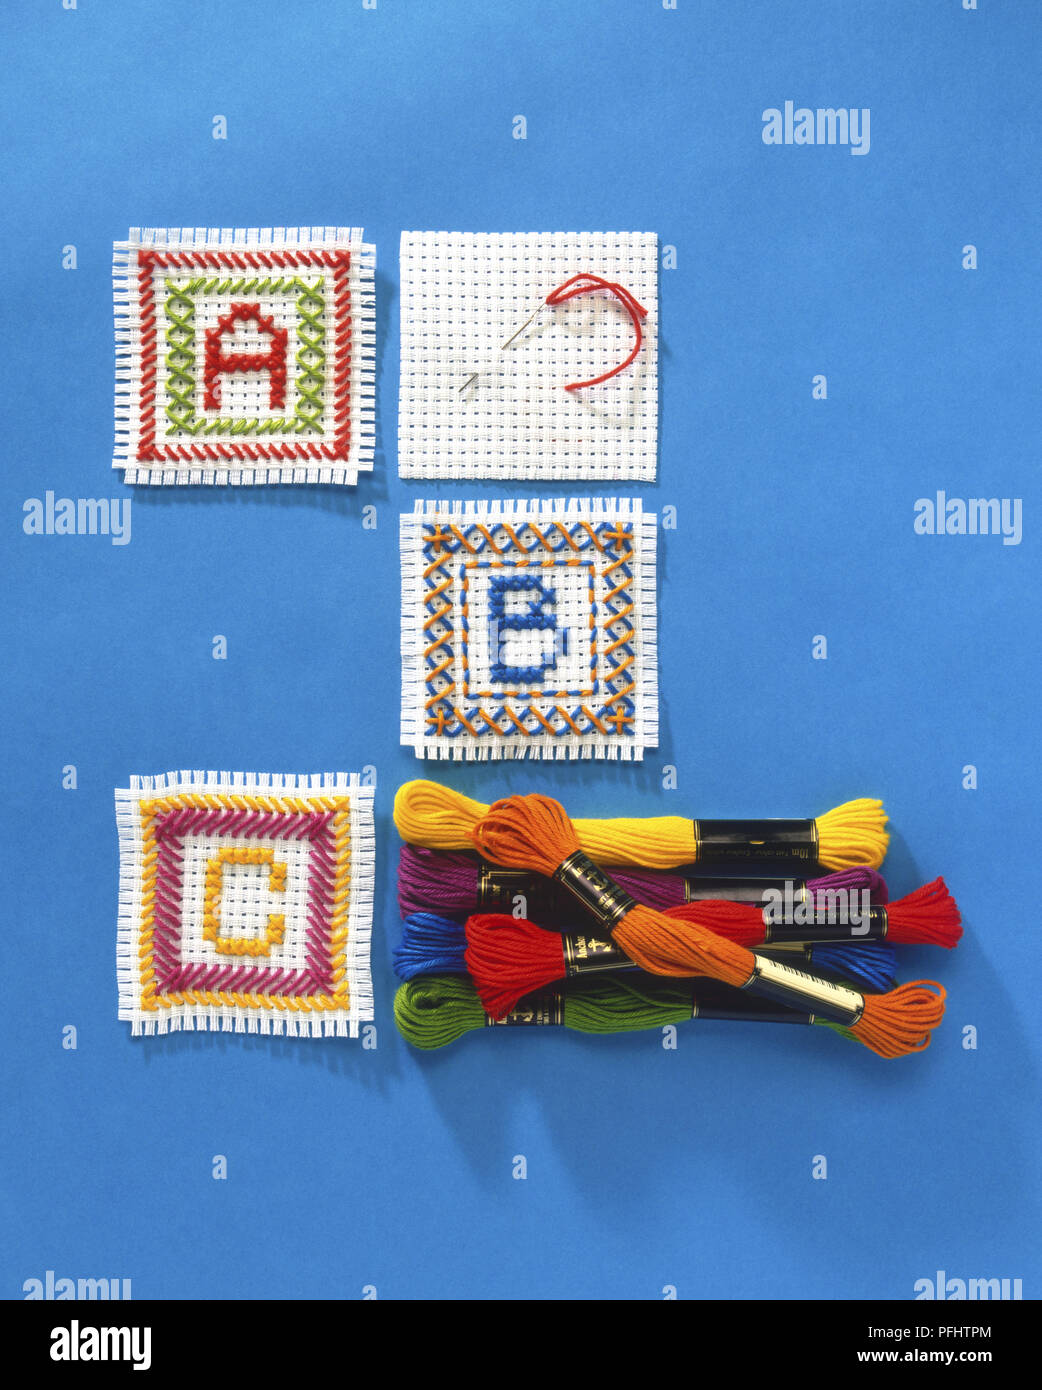 Les lettres A, B et C contre-cousus en carrés distincts de tissu blanc, boules colorées empilées de fil de soie, vue de dessus Banque D'Images